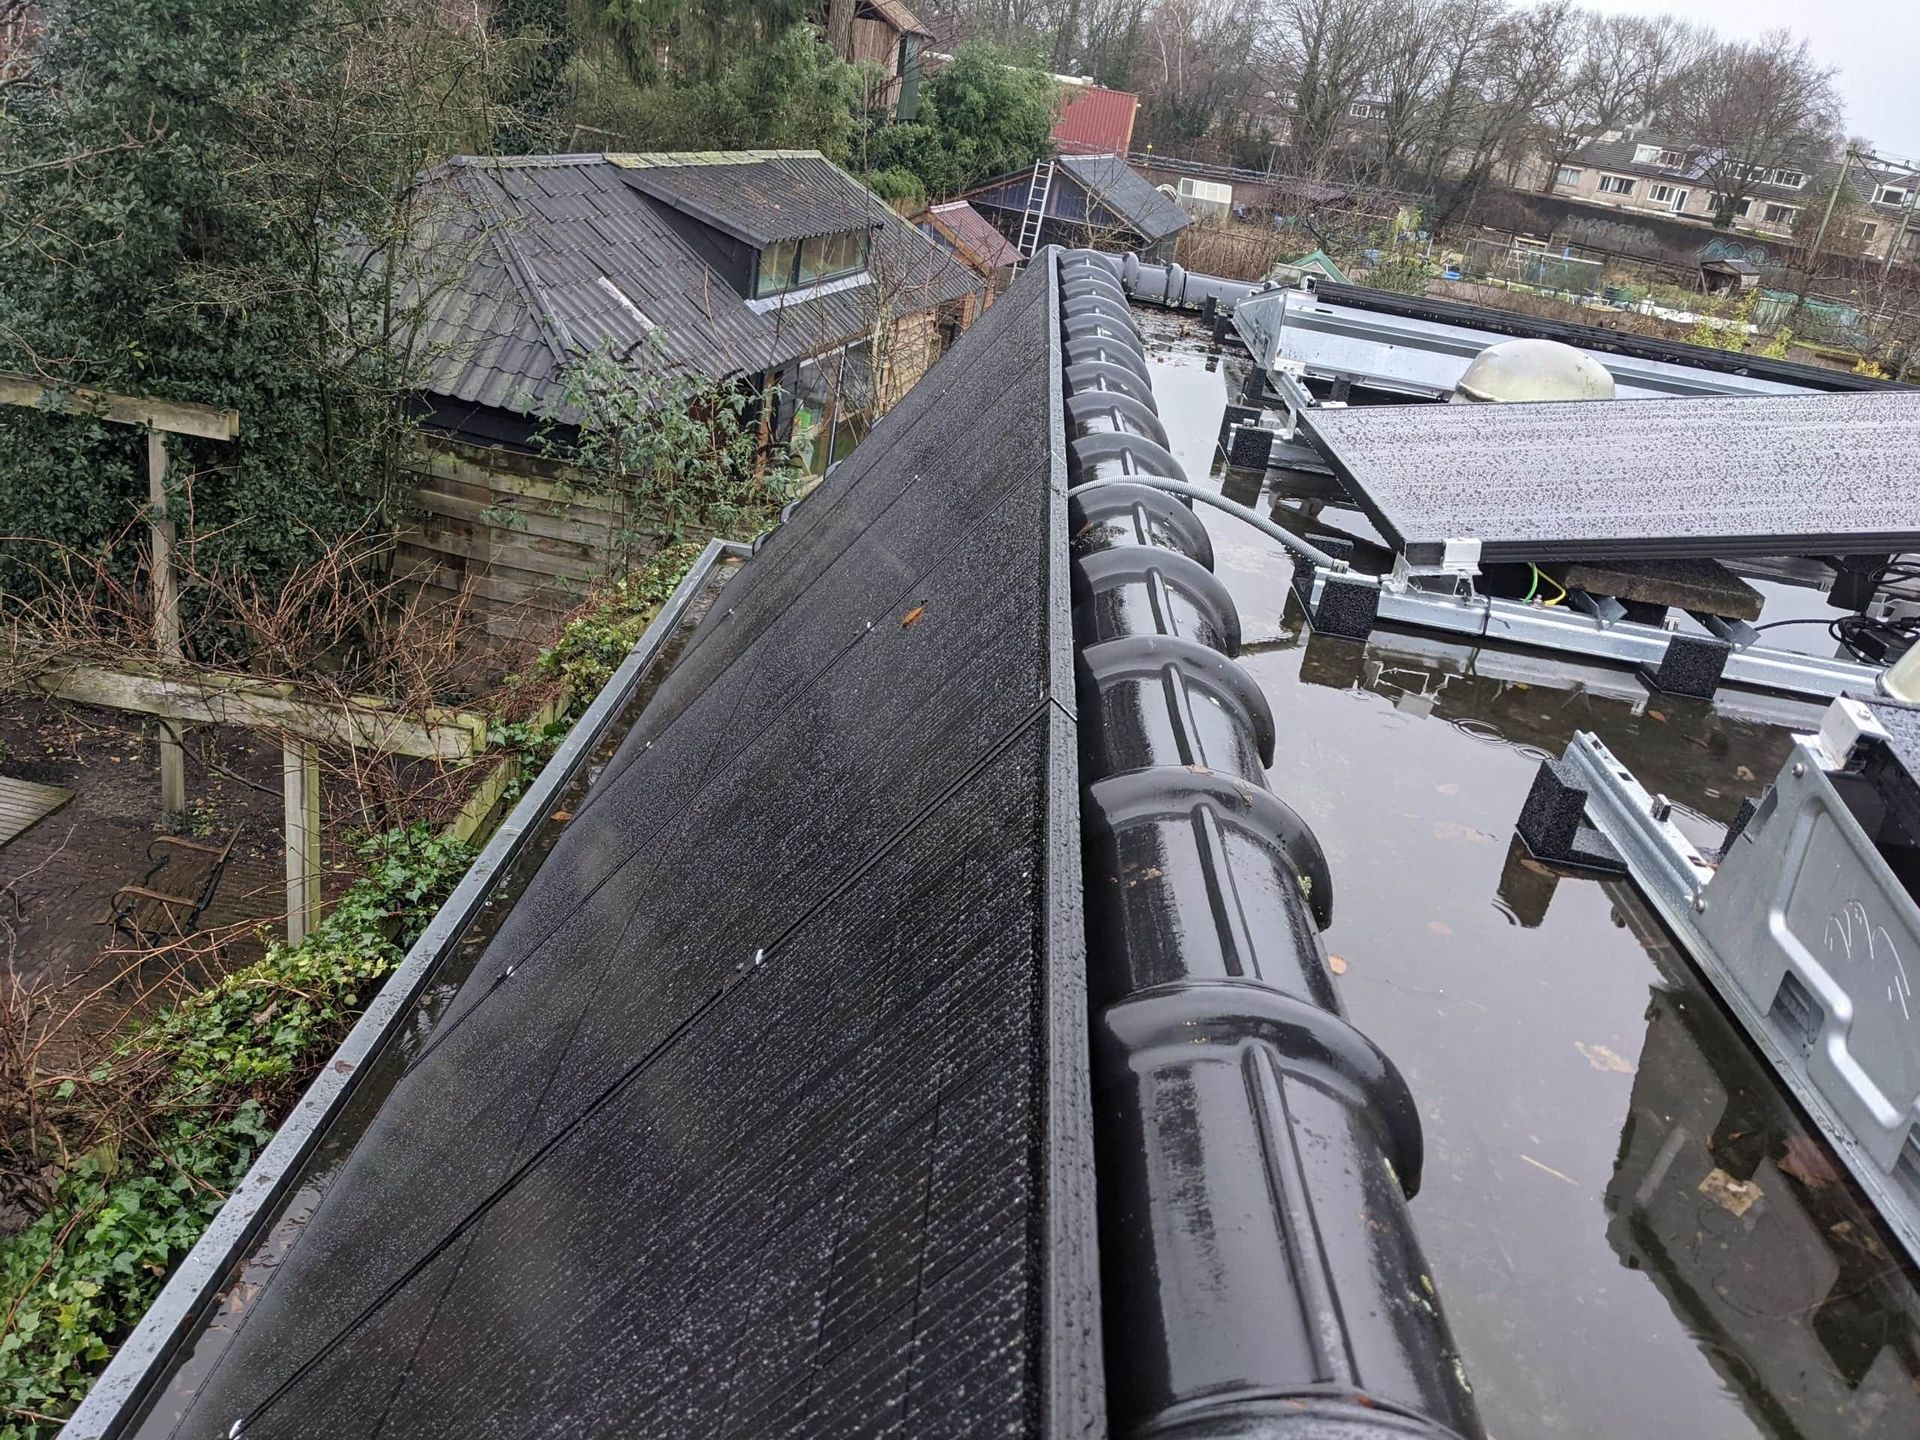 zonnepanelen op dak in regen